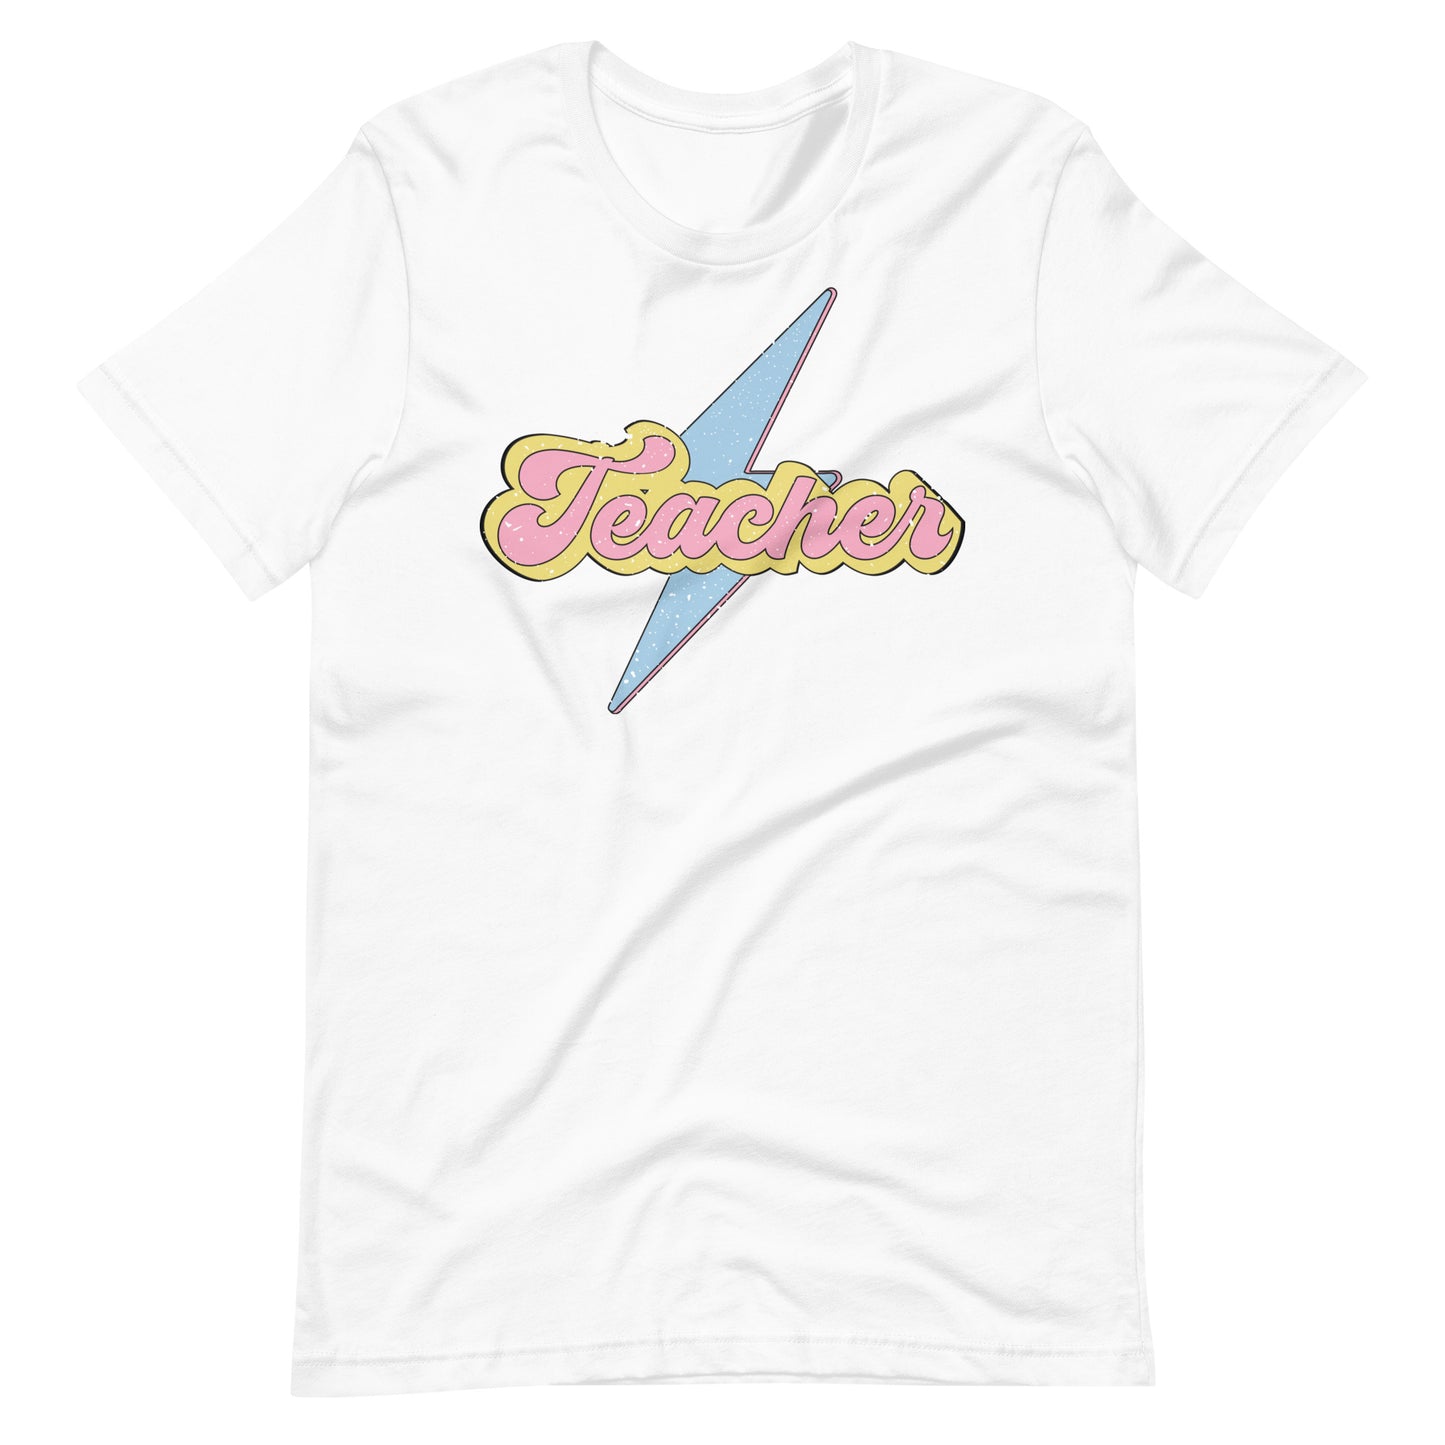 Super Teacher - T-Shirt